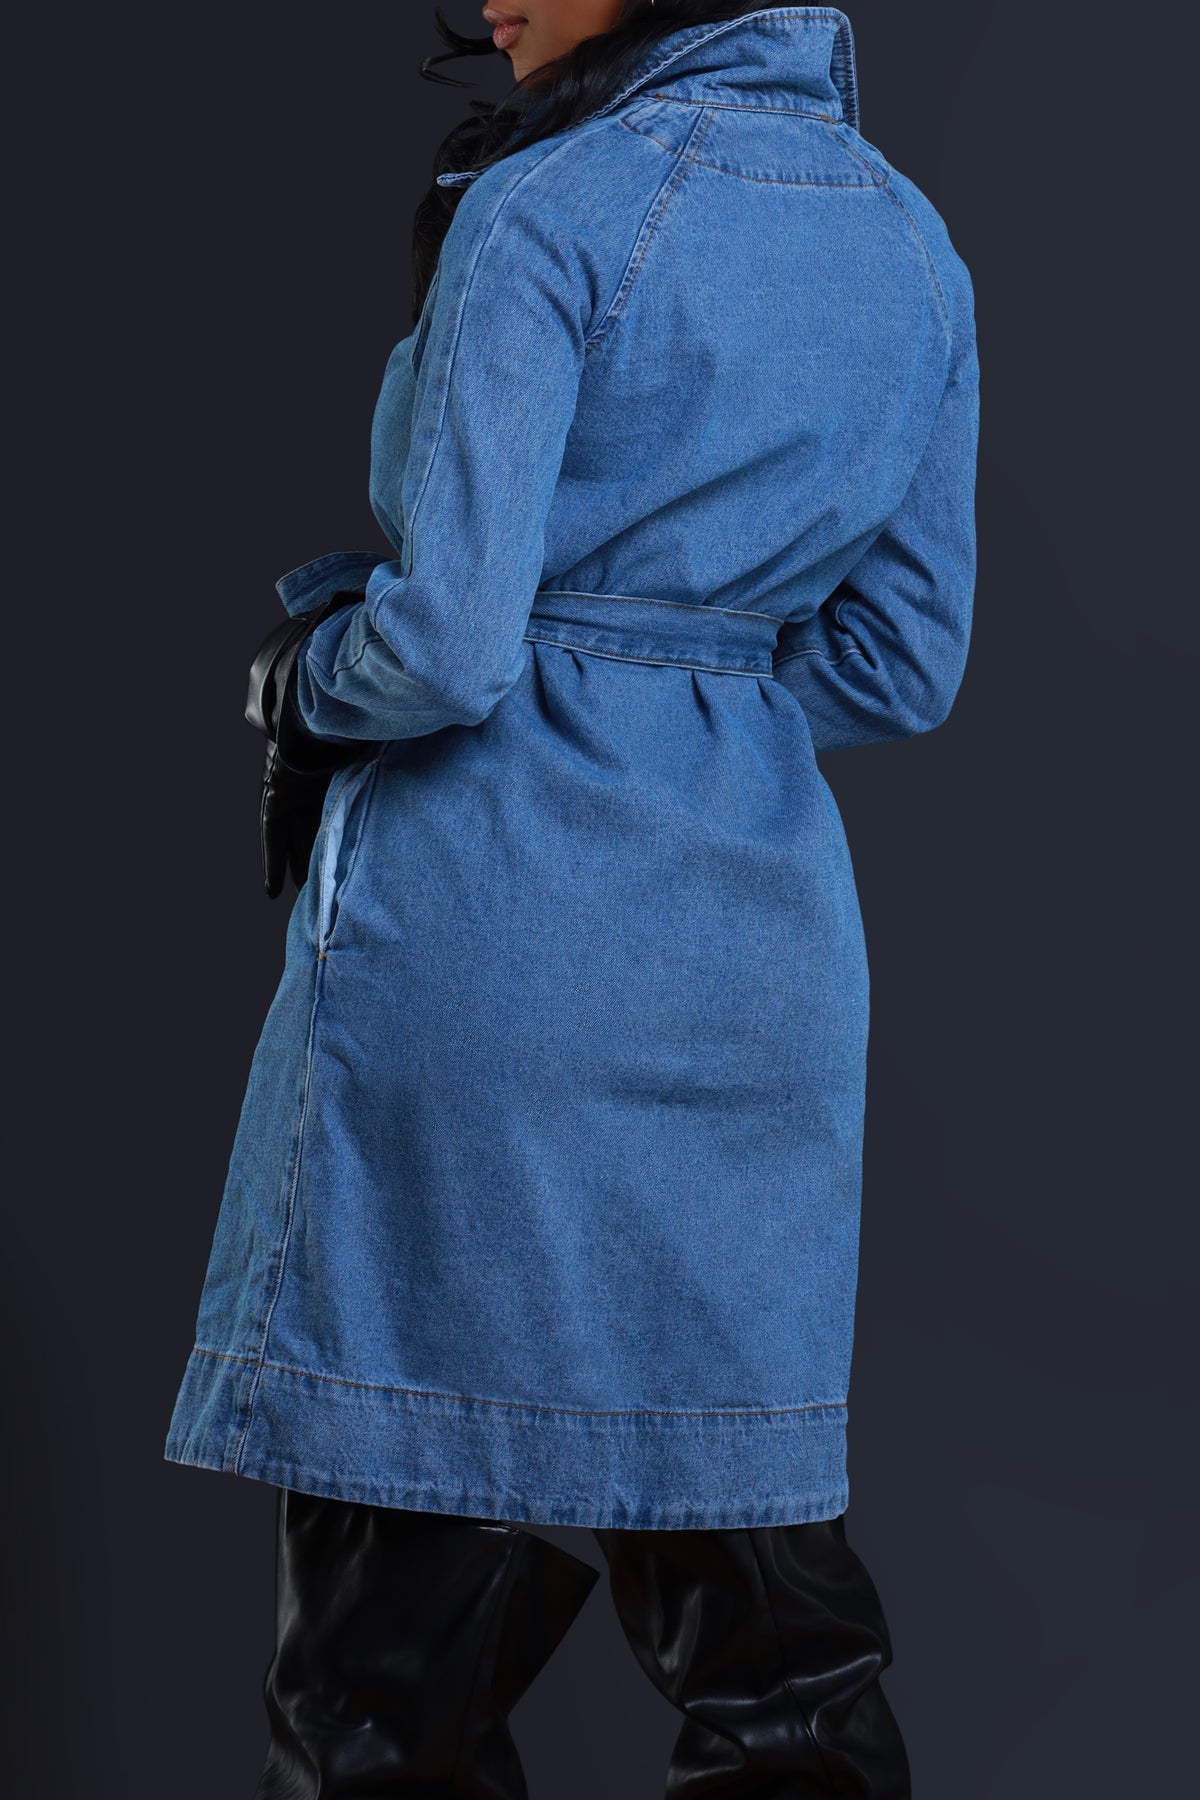 Esther Graff Denim Coat | Anne Hathaway Armageddon Time Coat - Jacket Makers